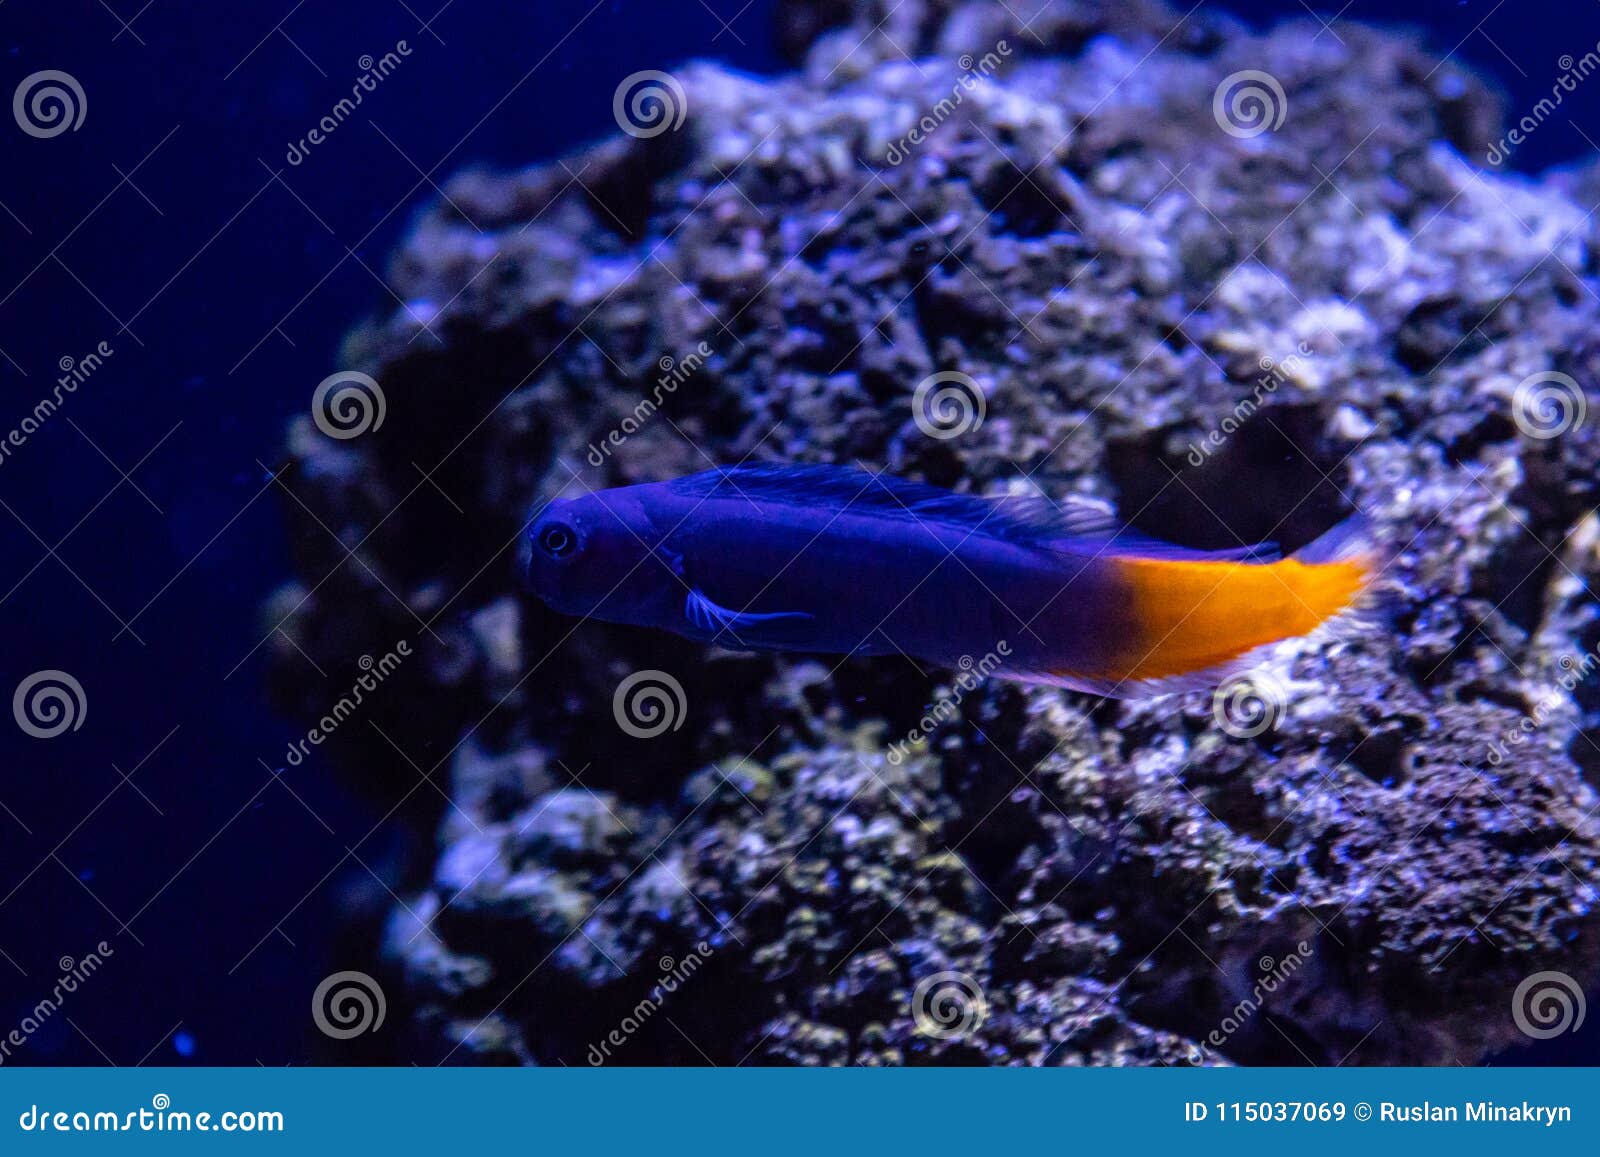 ecsenius bicolor fish